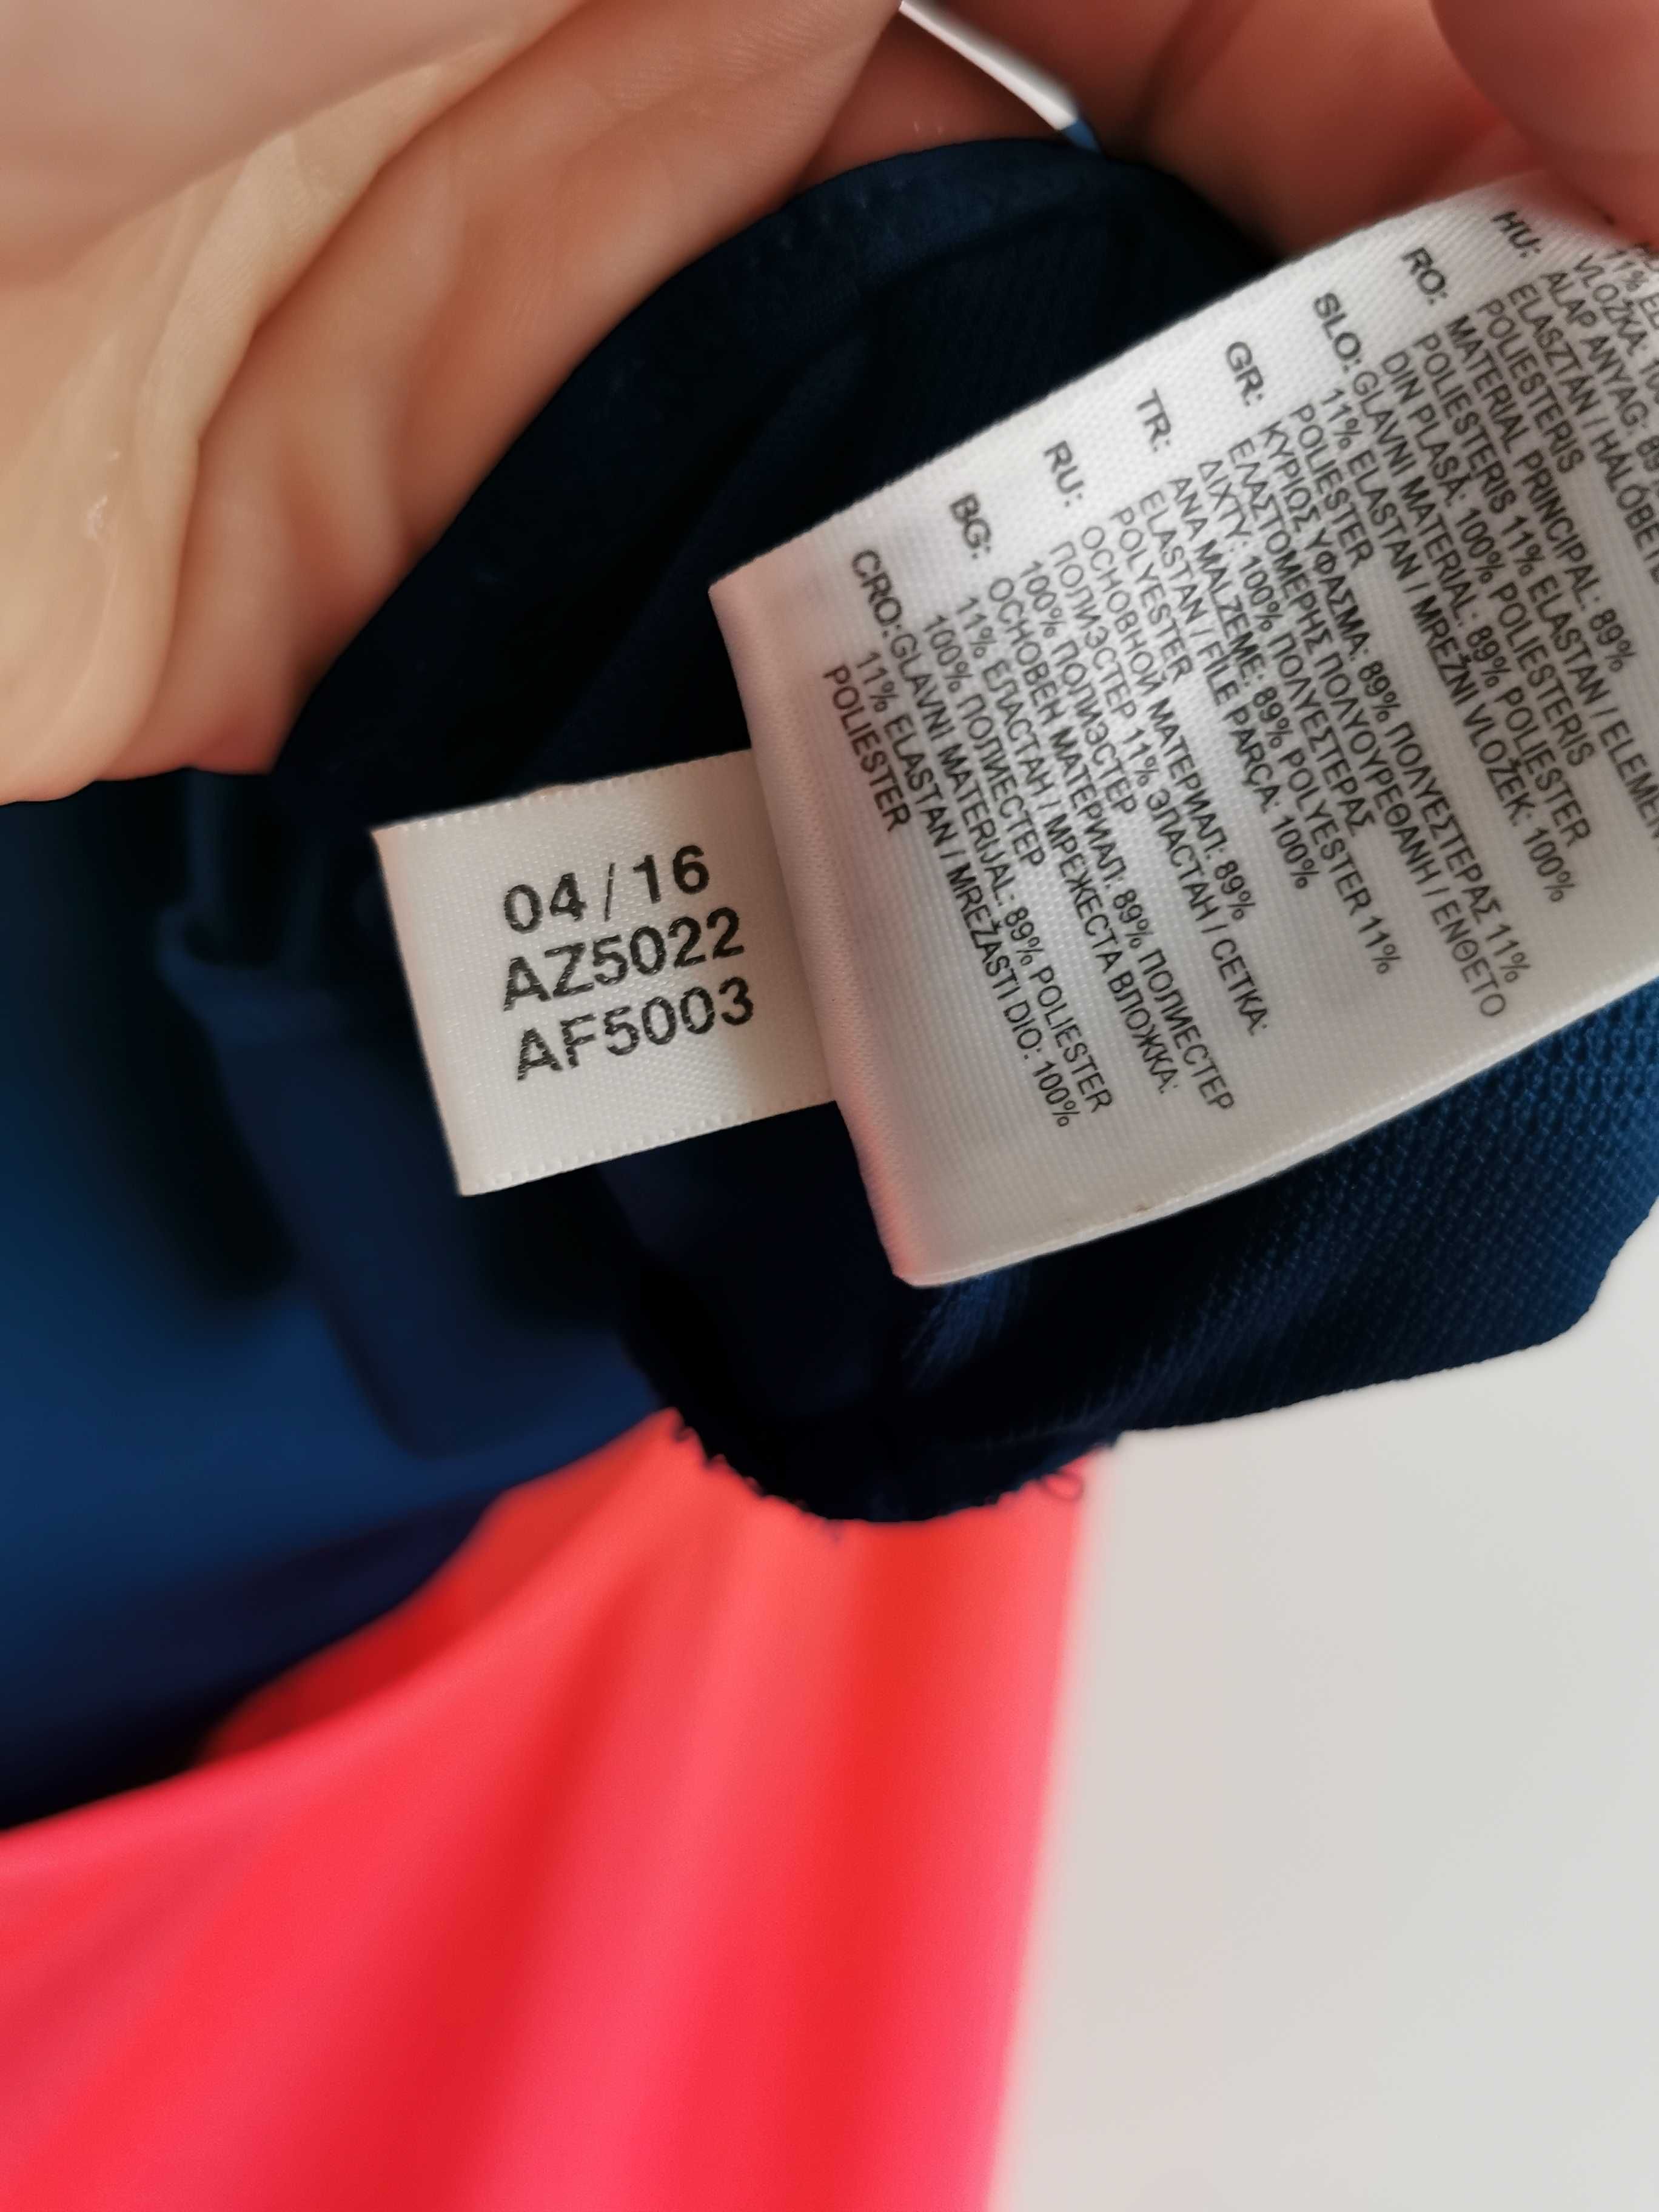 Adidas koszulka + top biustonosz sportowy 2w1 NOWE ORYGINALNE L/XL